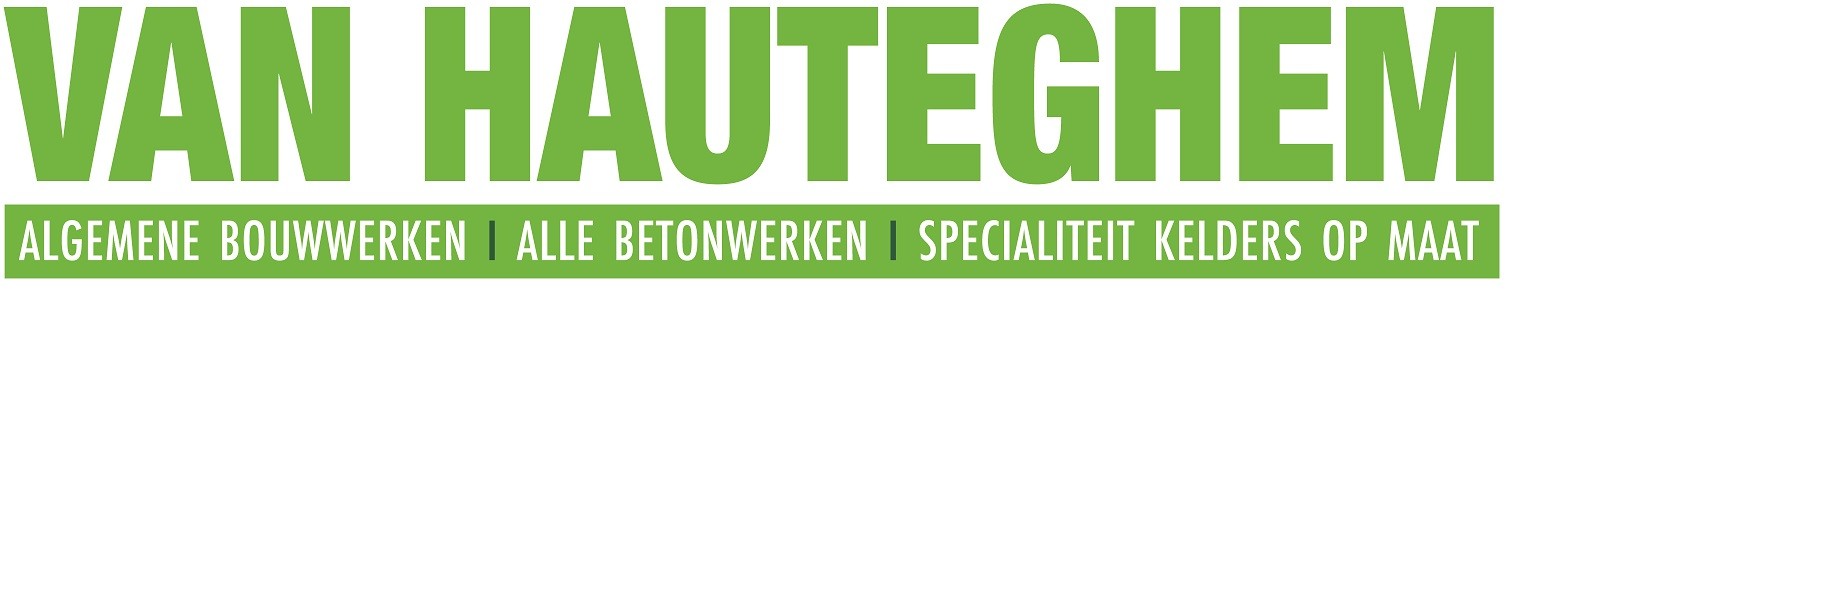 VanHauteghem_logo